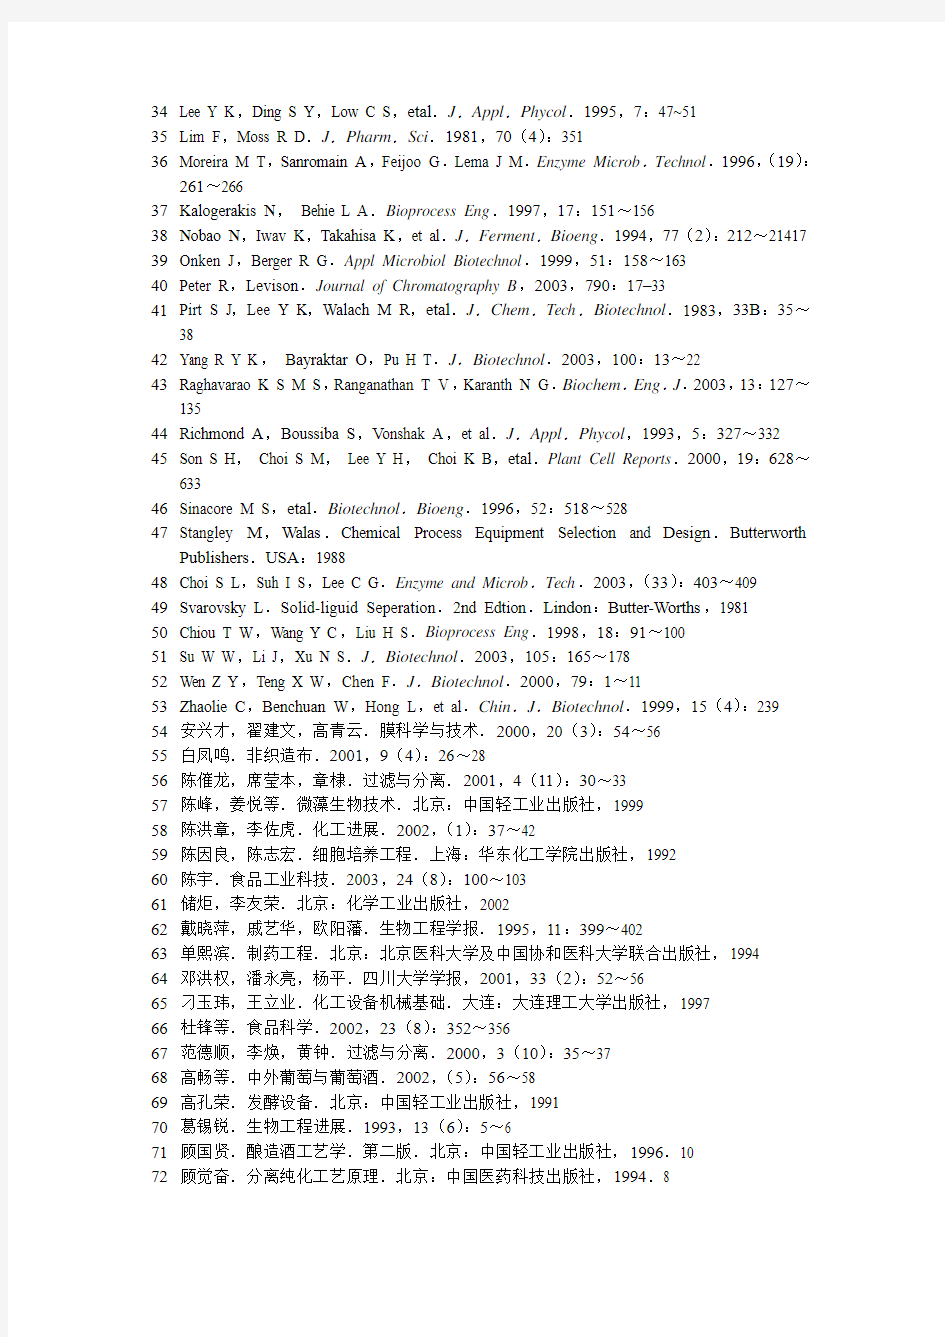 浙江工业大学生物工程设备电子书稿参考文献